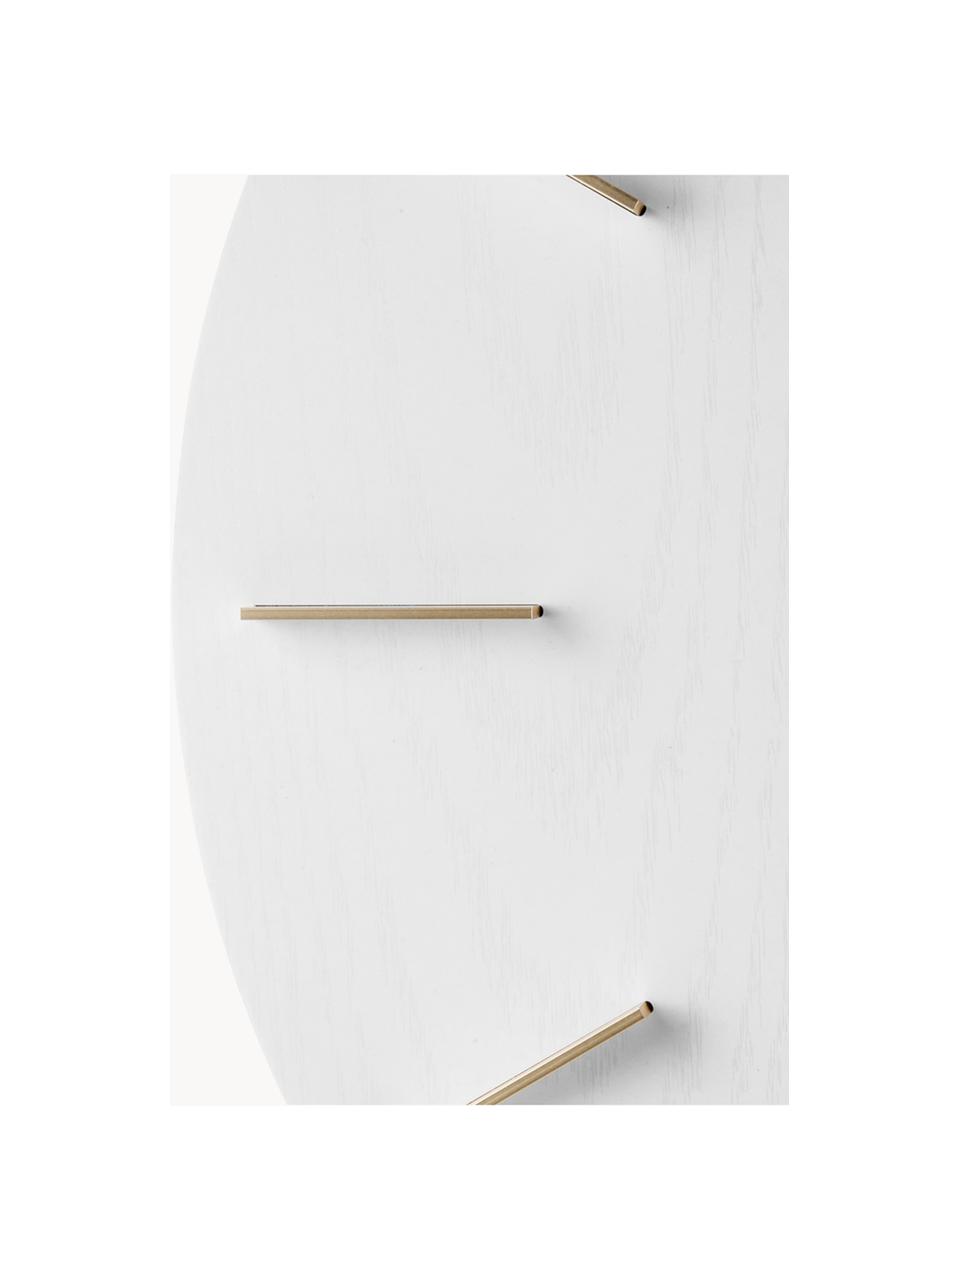 Orologio da parete XL Meek, Quadrante: pannello di fibra a media, Puntatore: alluminio, rivestito, Bianco, dorato, Ø 50 cm